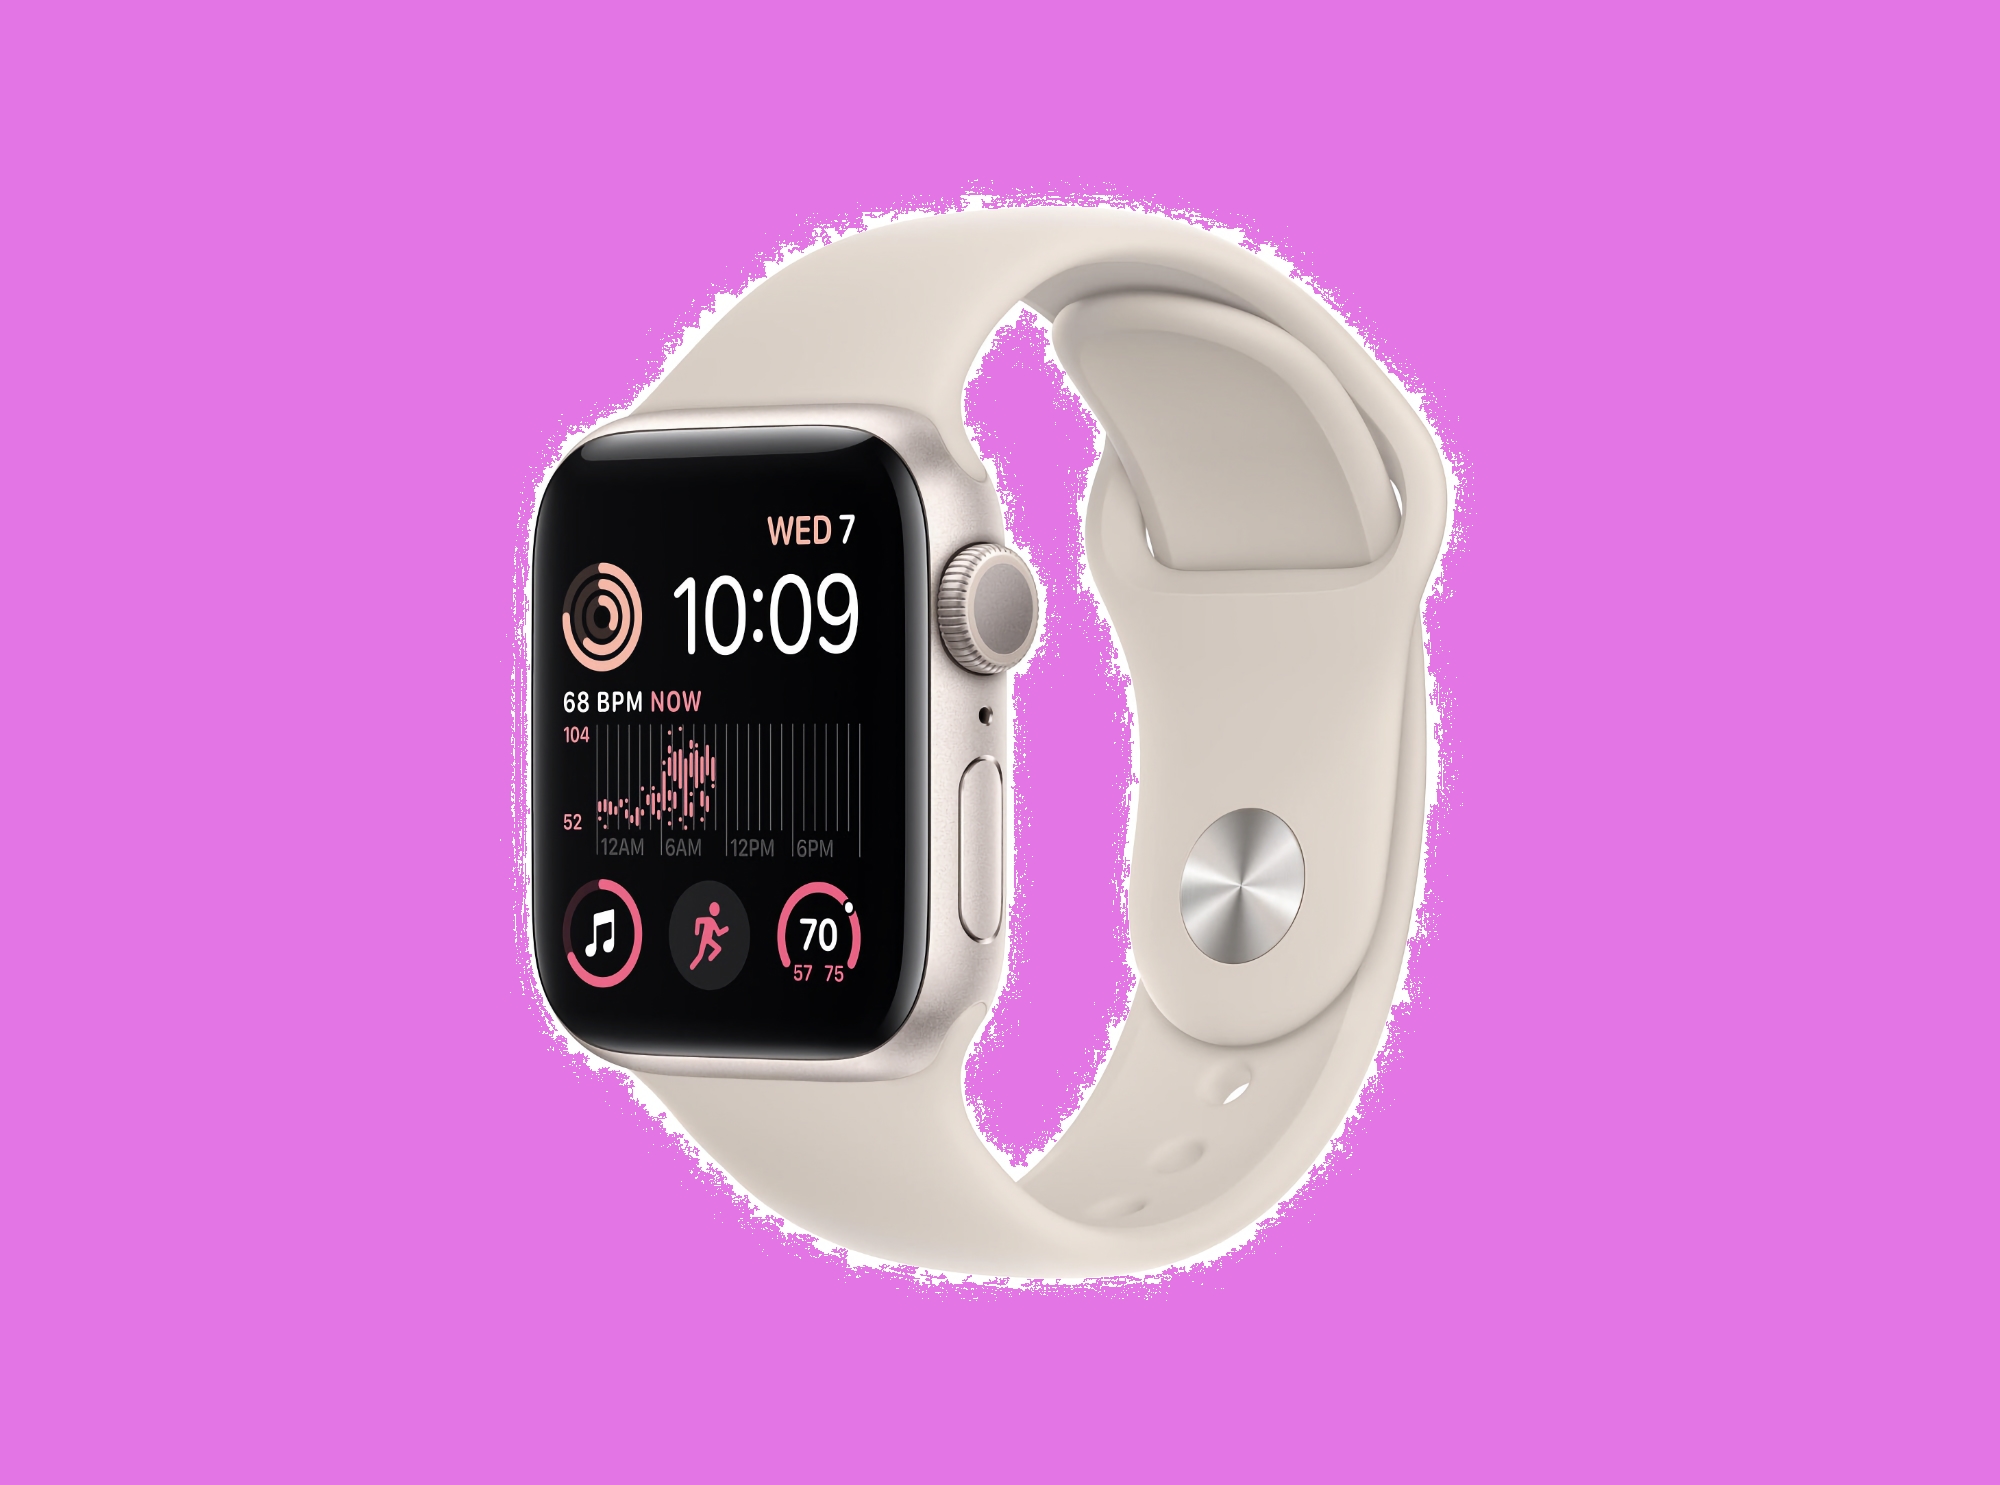 Apple Watch SE 2 mit 44-mm-Gehäuse und Mobilfunkunterstützung bei Amazon mit 89 Dollar Rabatt erhältlich